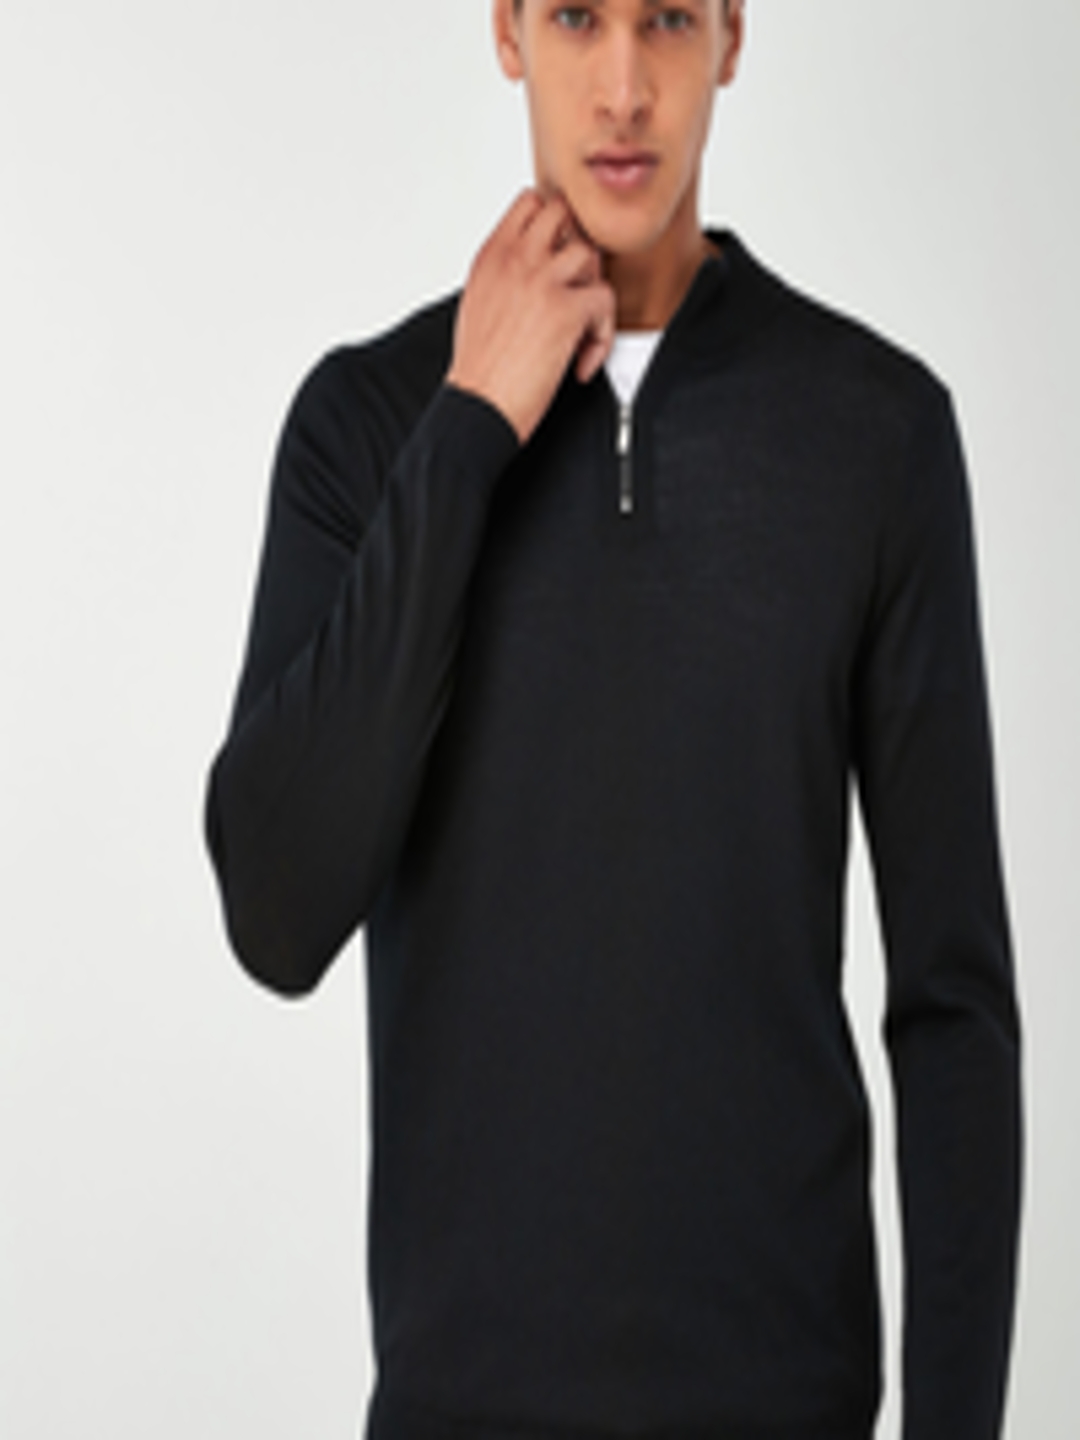 Buy Next Men Black Solid Woollen Sweater - Sweaters for Men 10900672 ...